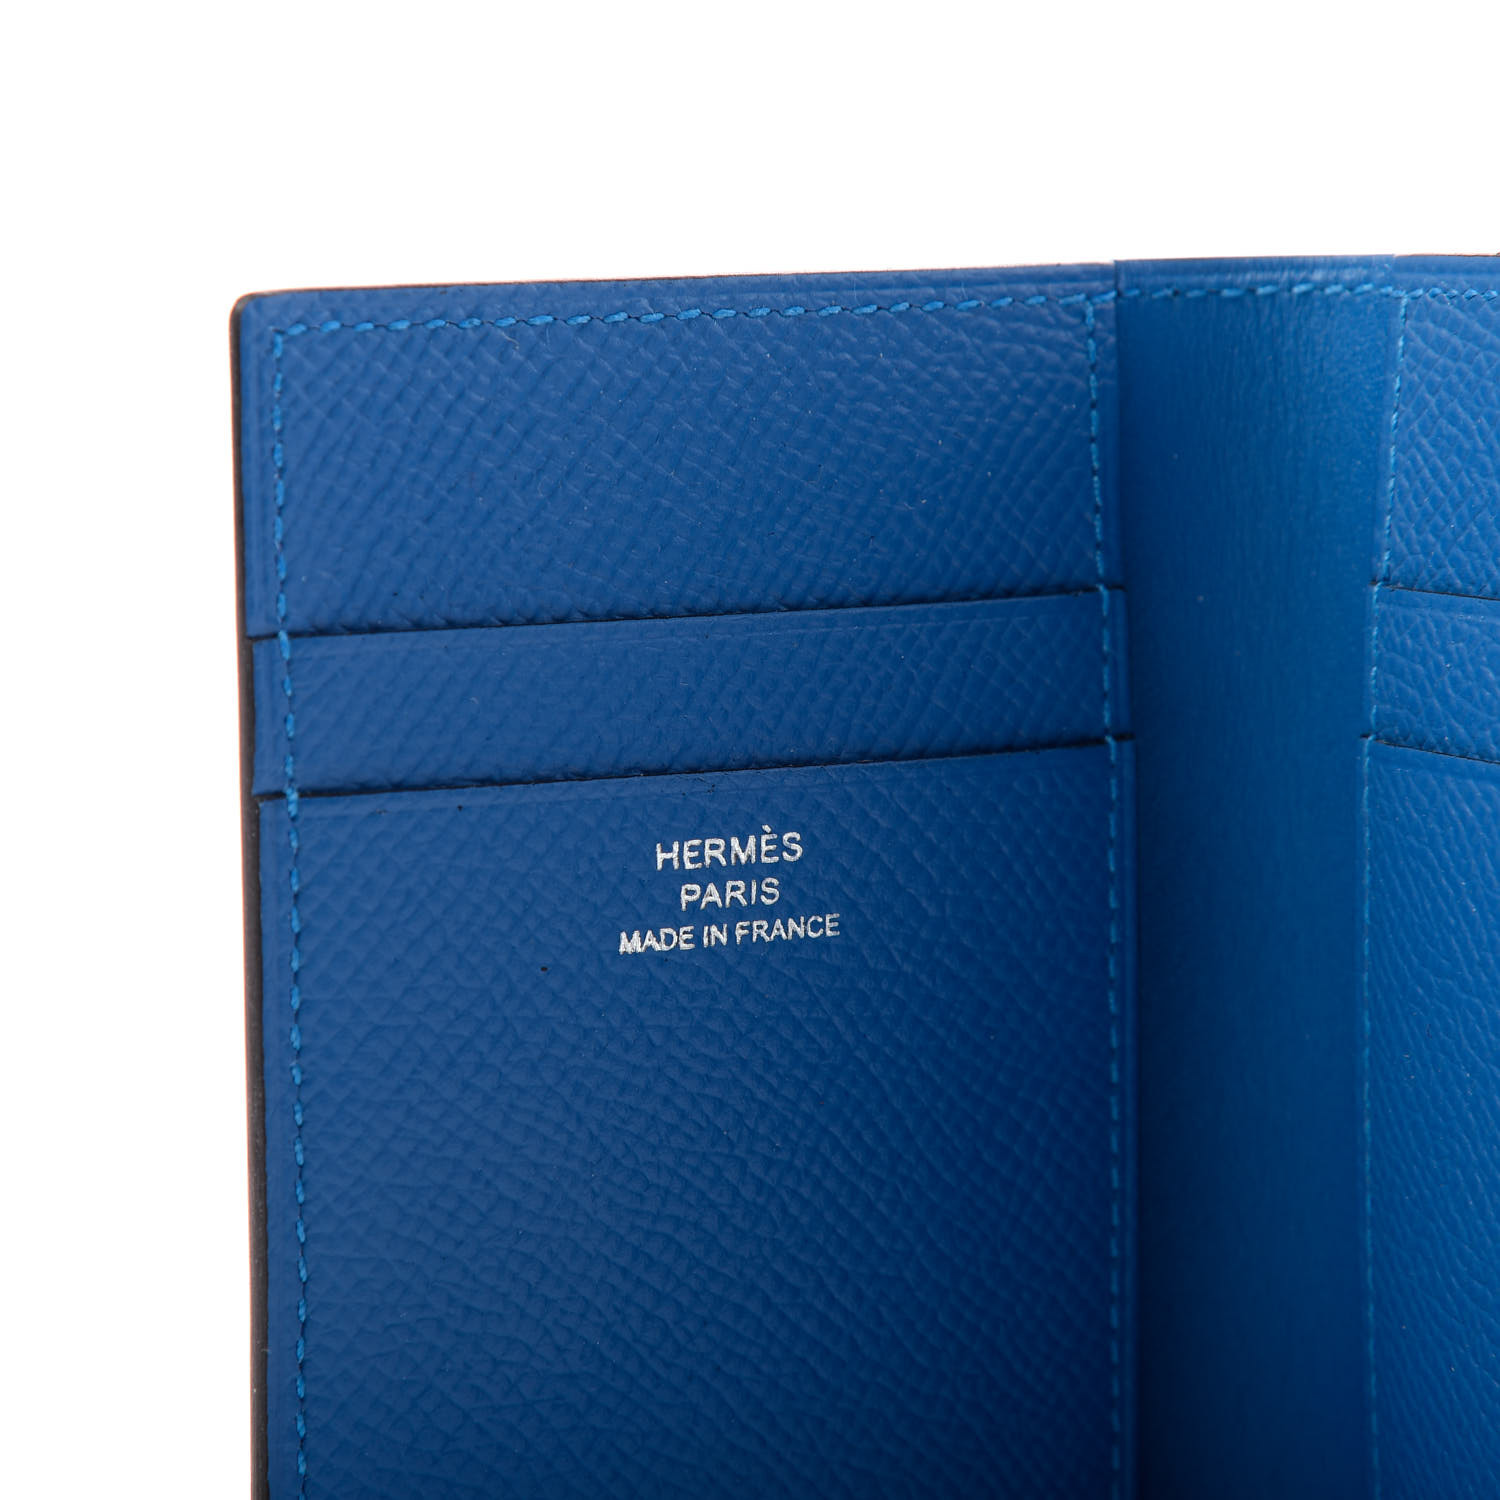 HERMES Epsom MC2 Euclide Card Holder Case Bleu Indigo Bleu Paradis ...